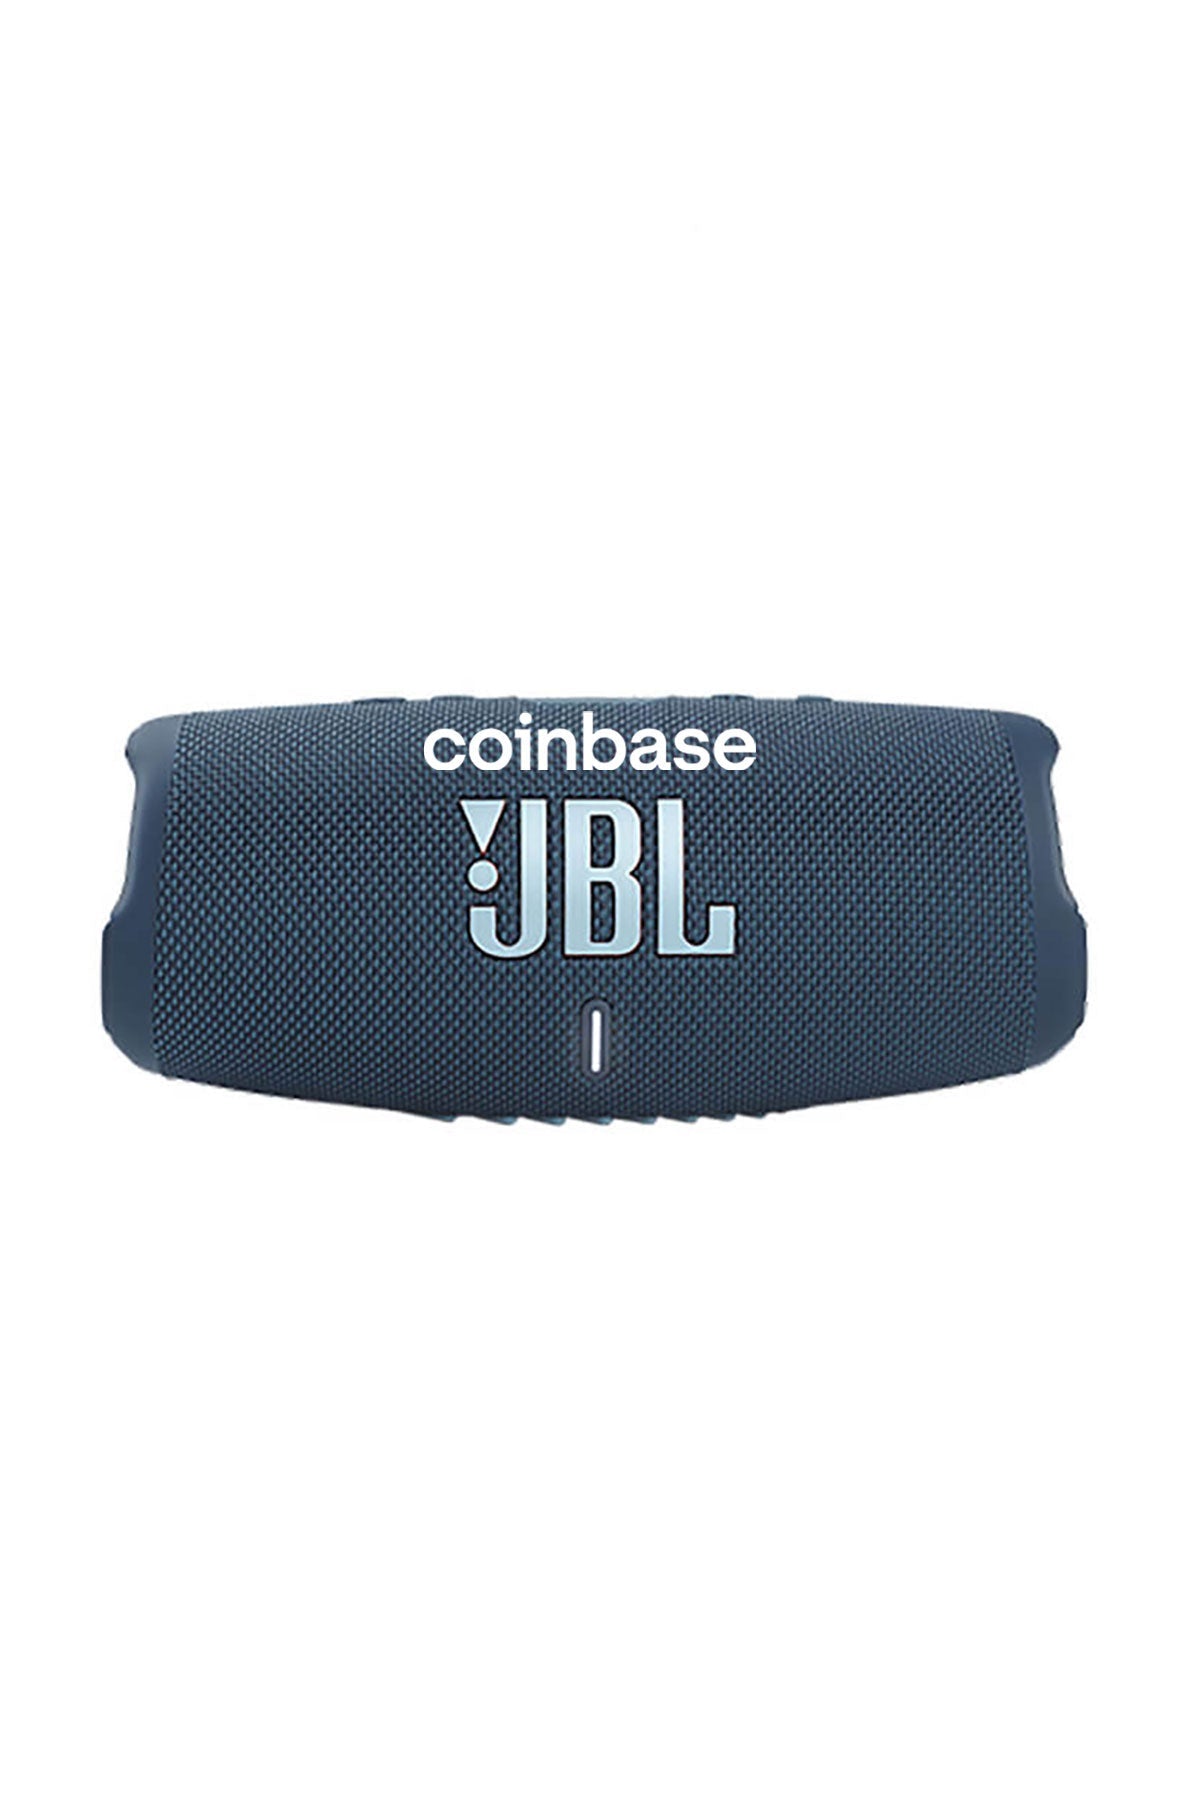 JBL Charge-5 Waterproof Custom Speaker + Powerbank, Blue [Coinbase]